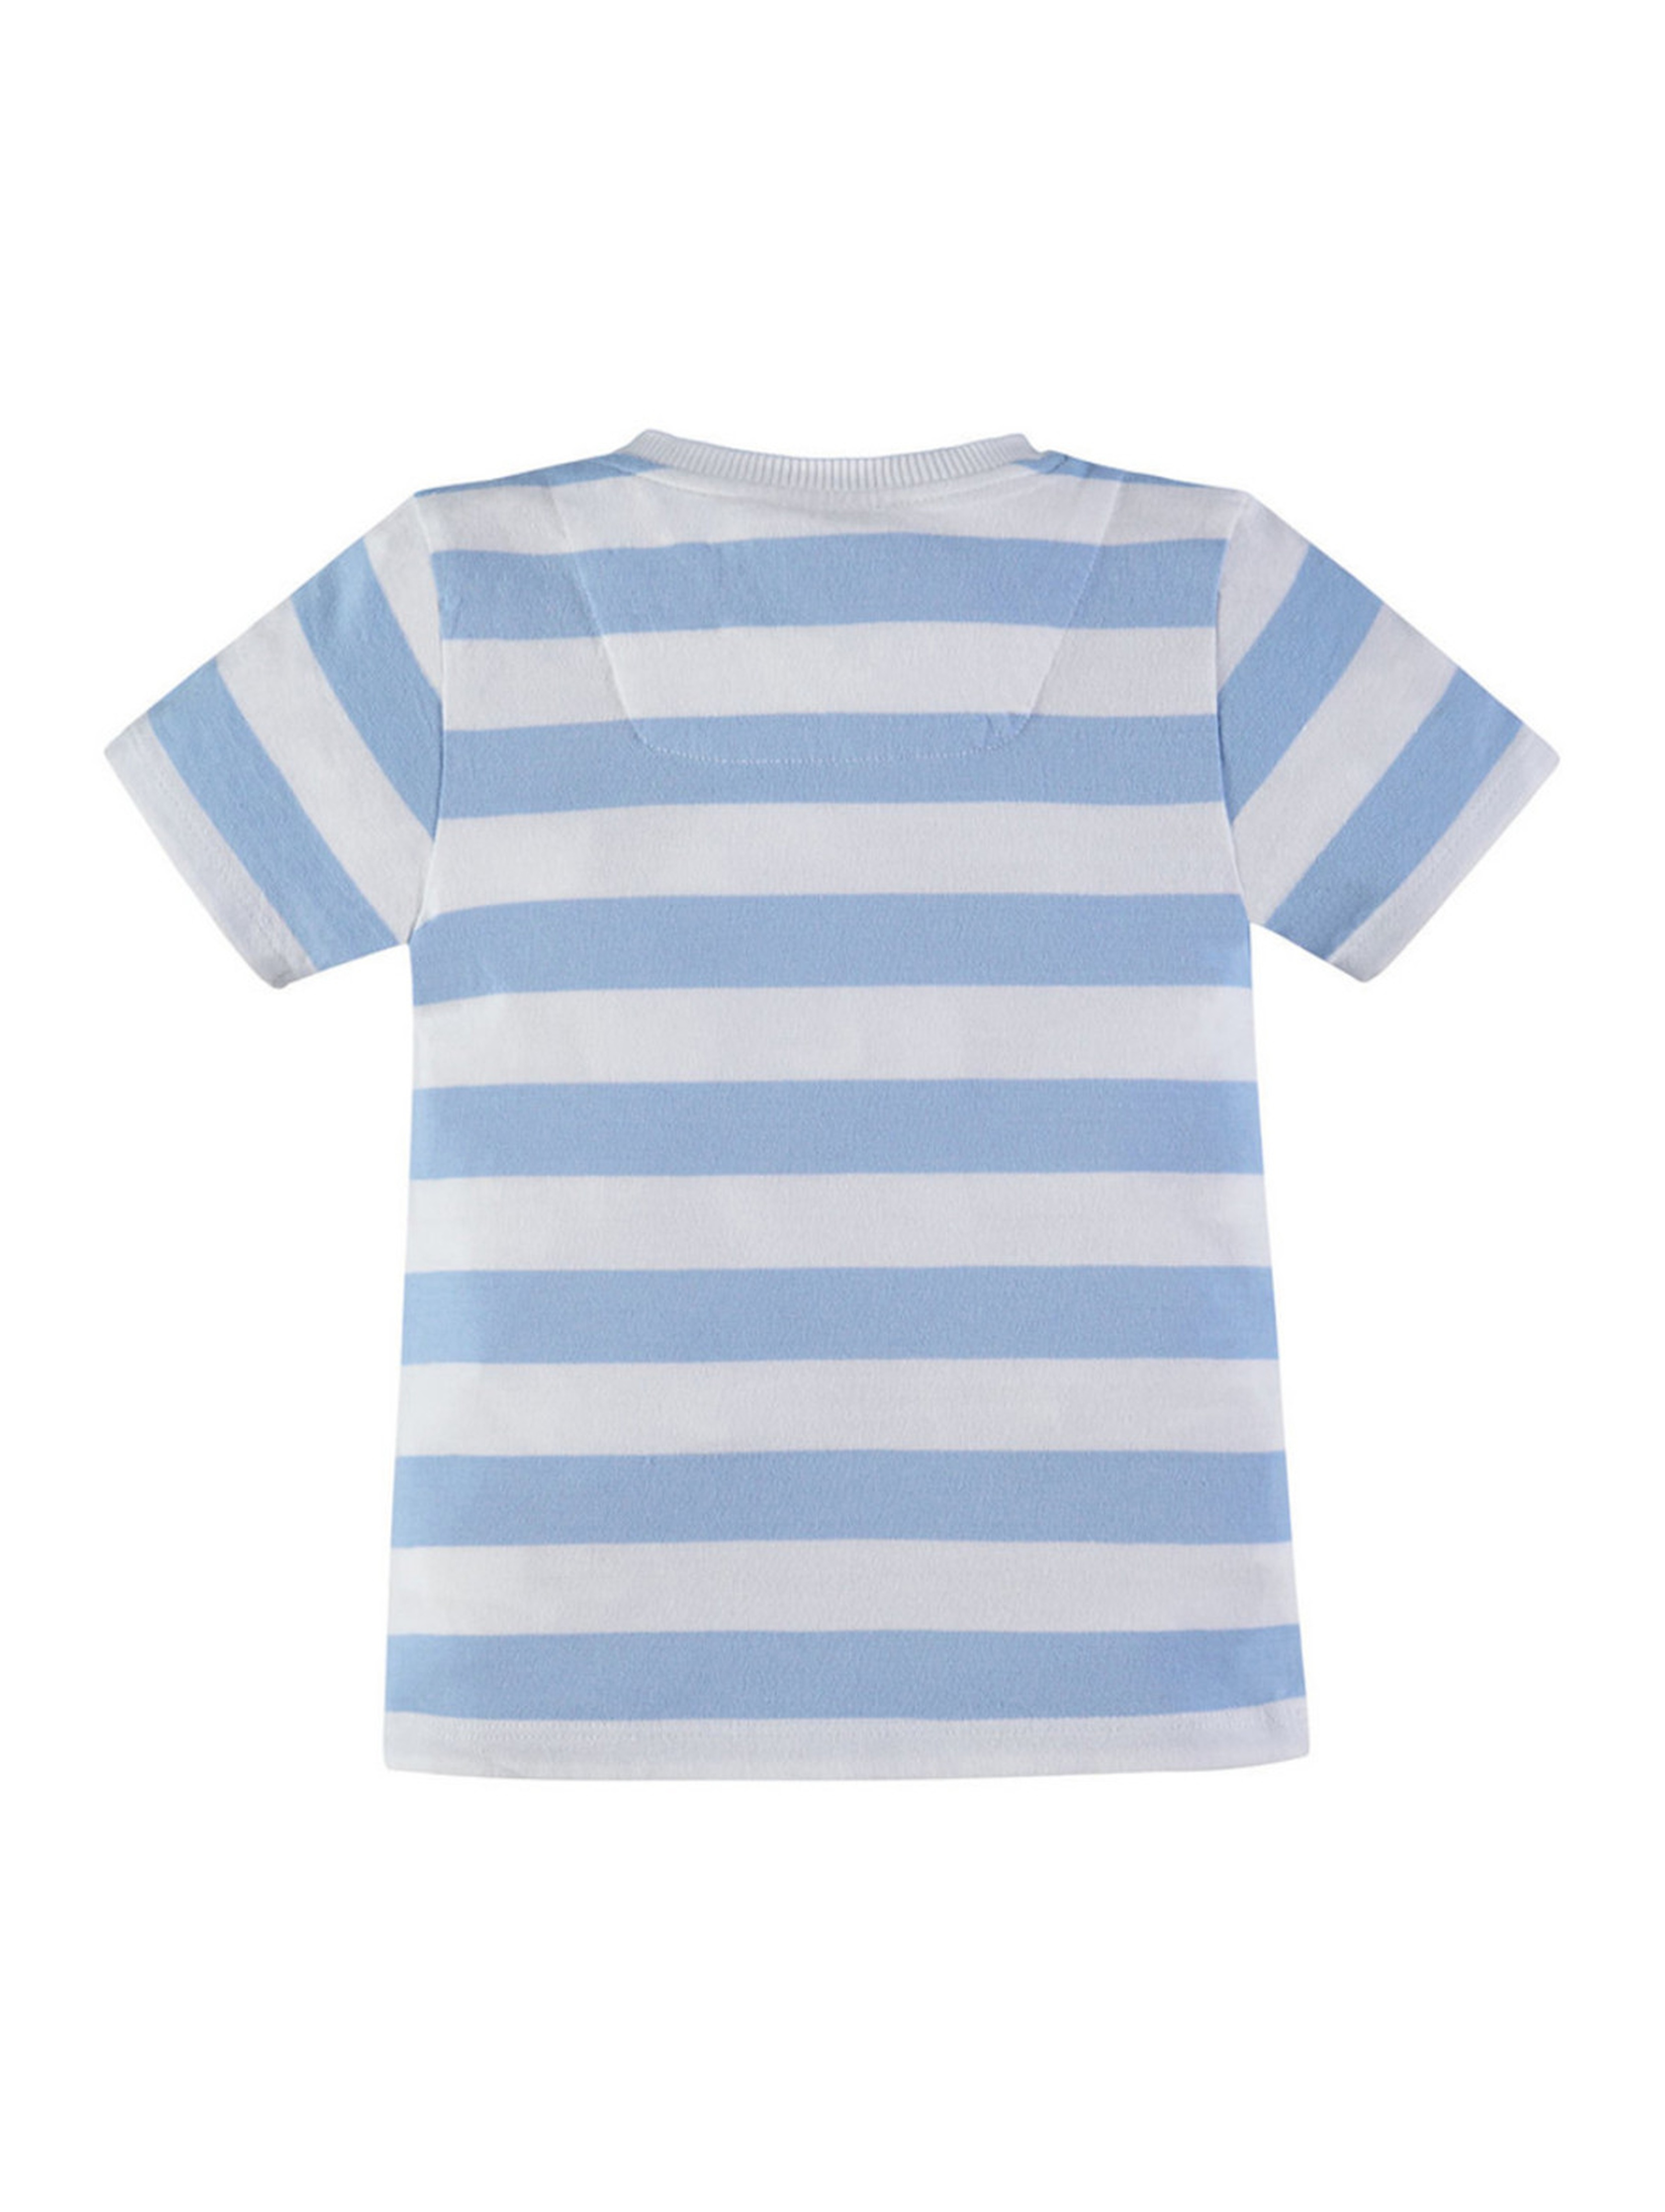 Koszulka z krótkim rękawem dla chłopca niebieski